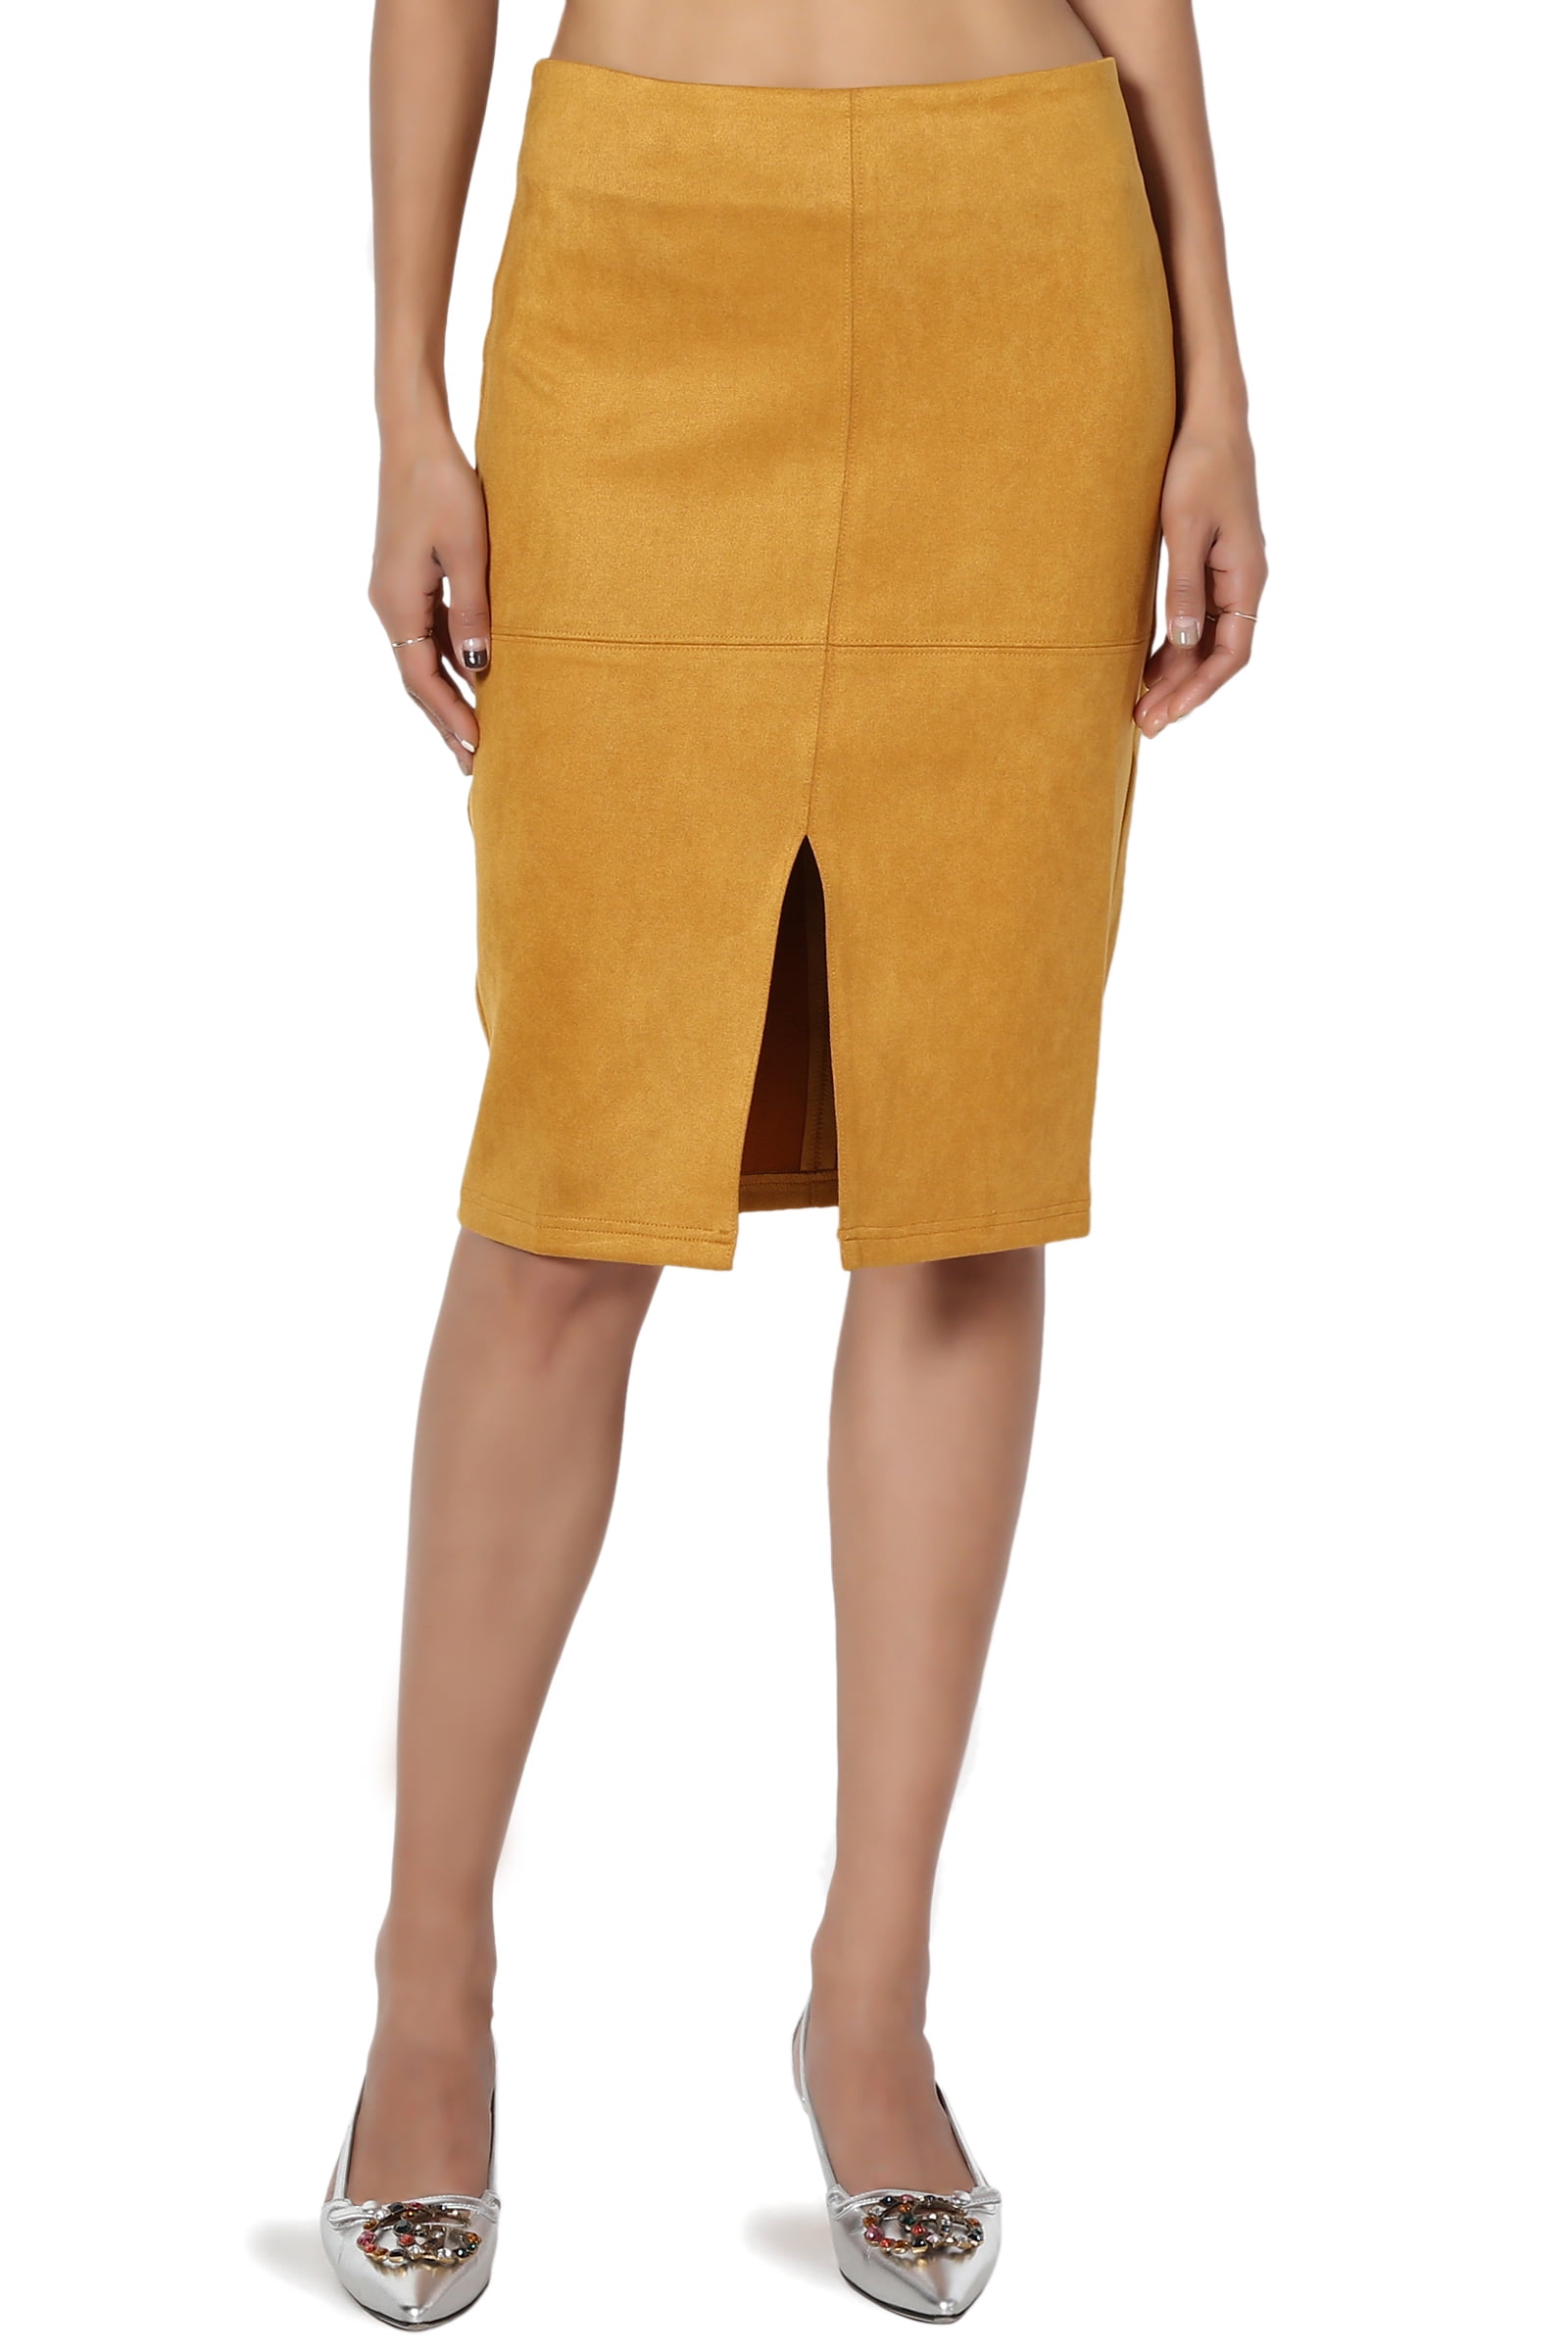 tan skirt knee length